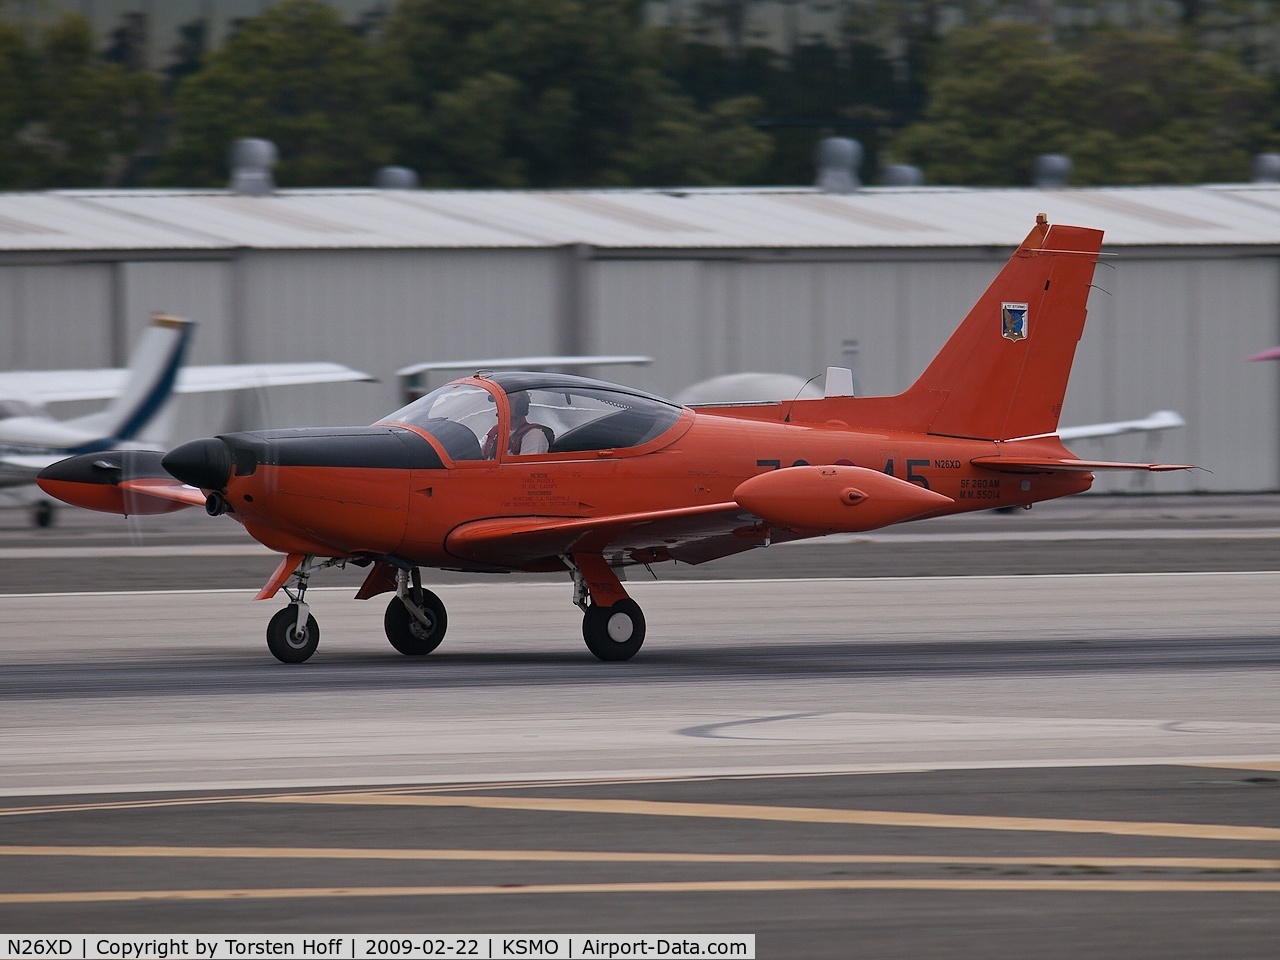 N26XD, 1987 SIAI-Marchetti F-260C C/N 40-016, N26XD departing from RWY 21